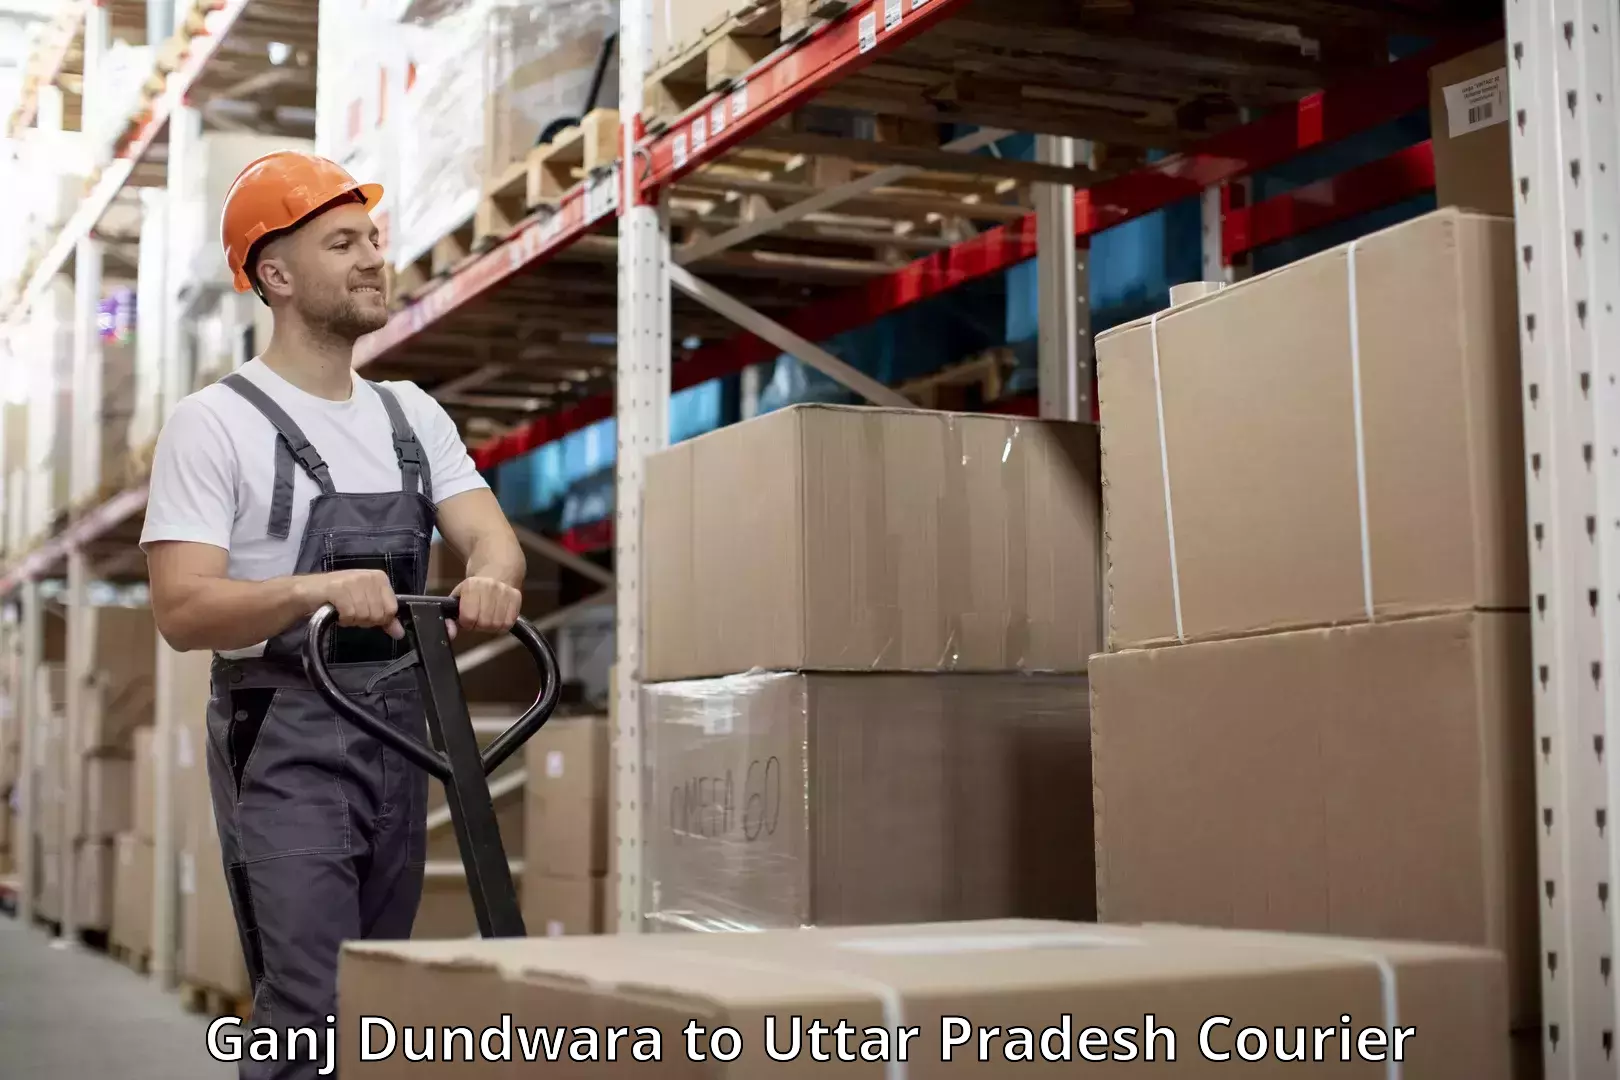 Baggage courier advice Ganj Dundwara to Uttar Pradesh